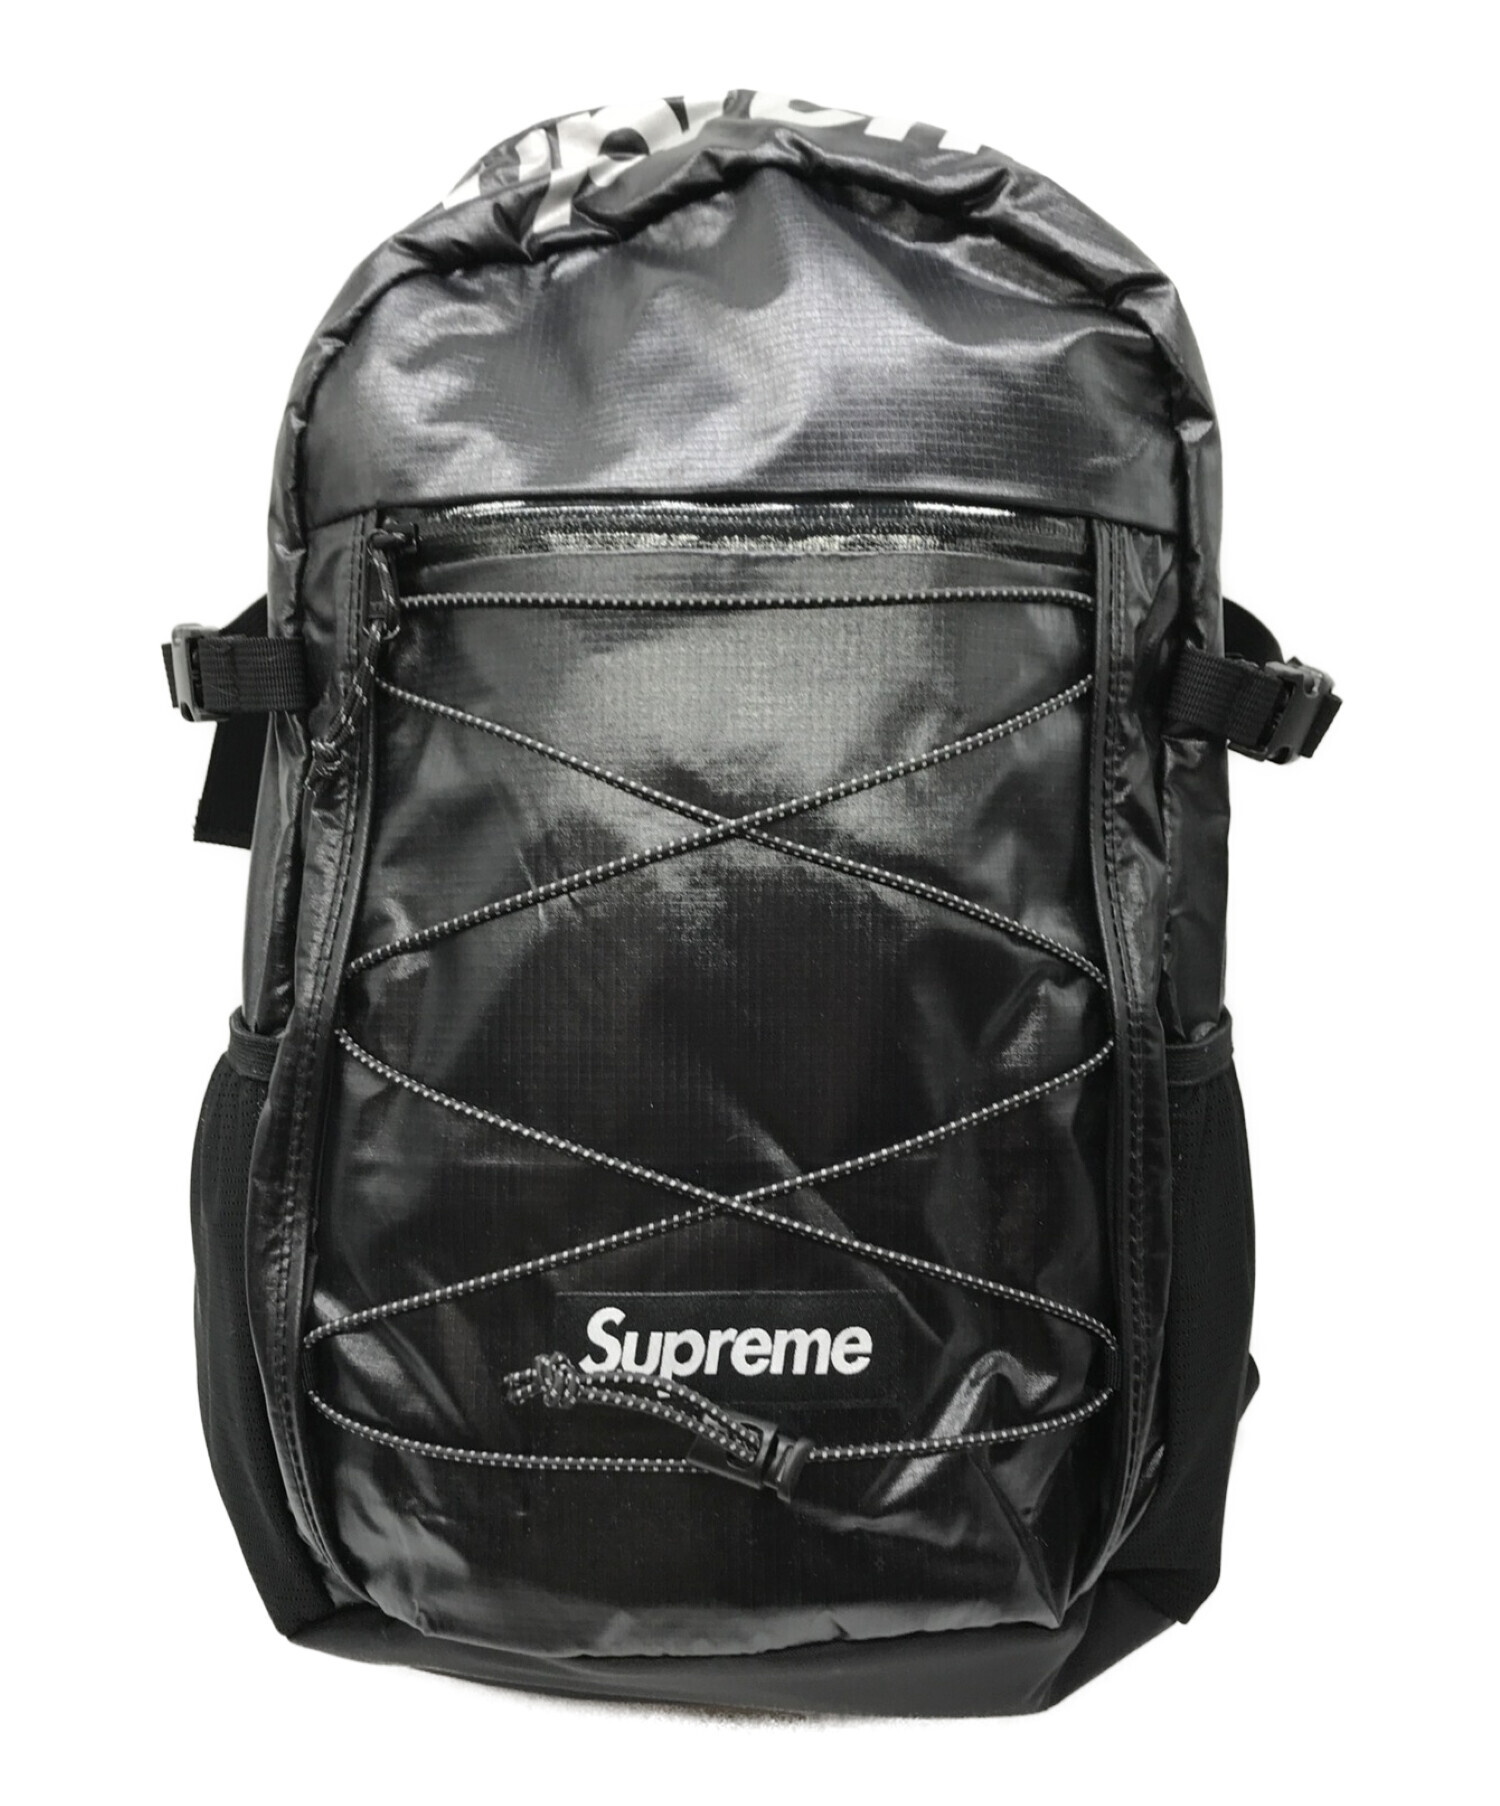 supreme 17aw backpack black